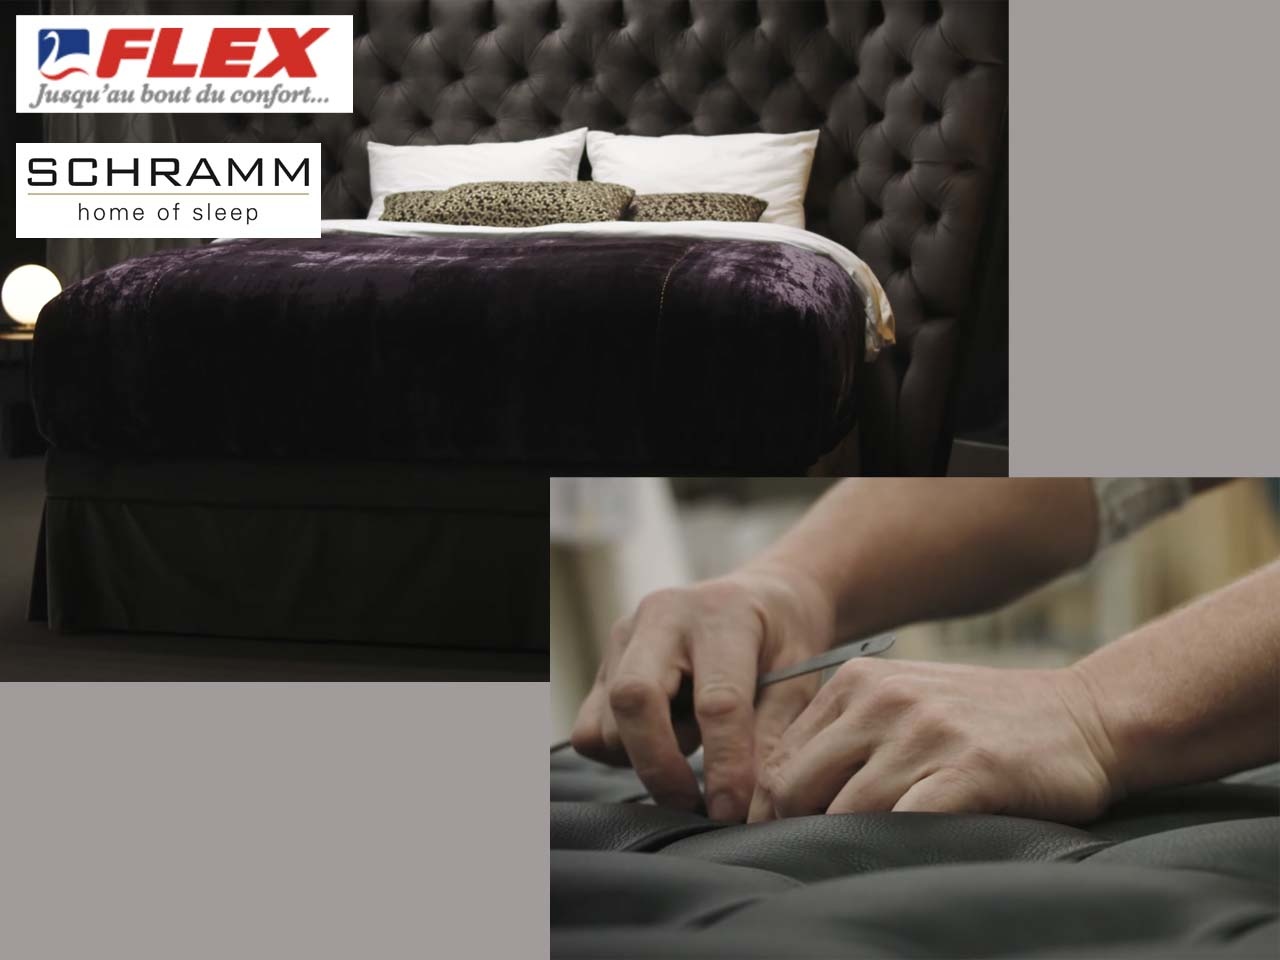 Le groupe Flex rachète la société allemande Schramm et ouvre une nouvelle usine au Texas